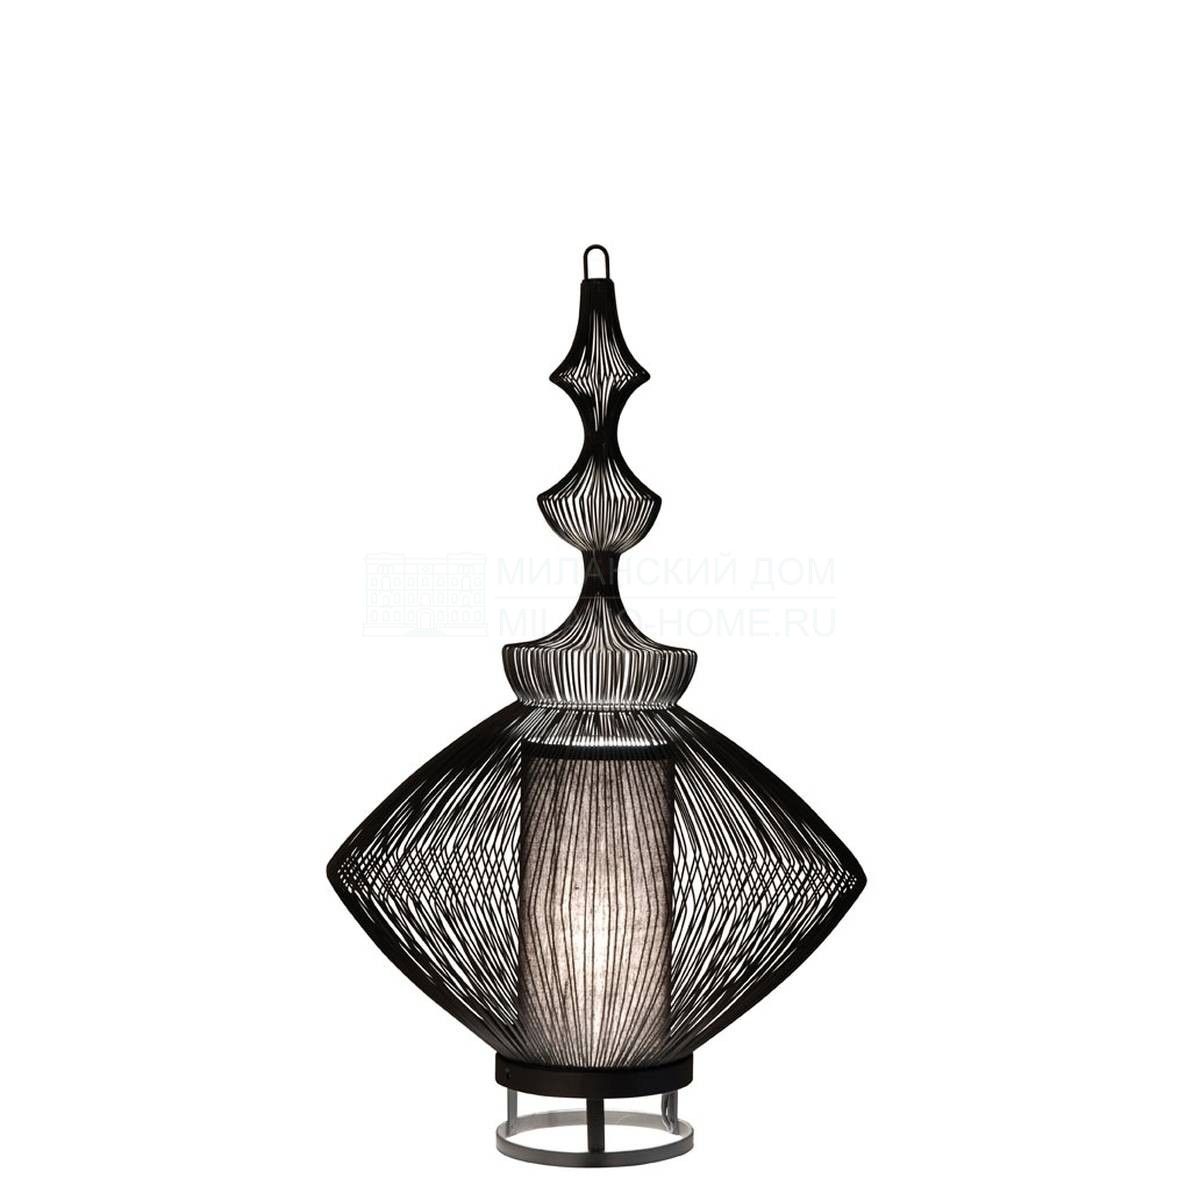 Настольная лампа Opium table lamp из Франции фабрики FORESTIER